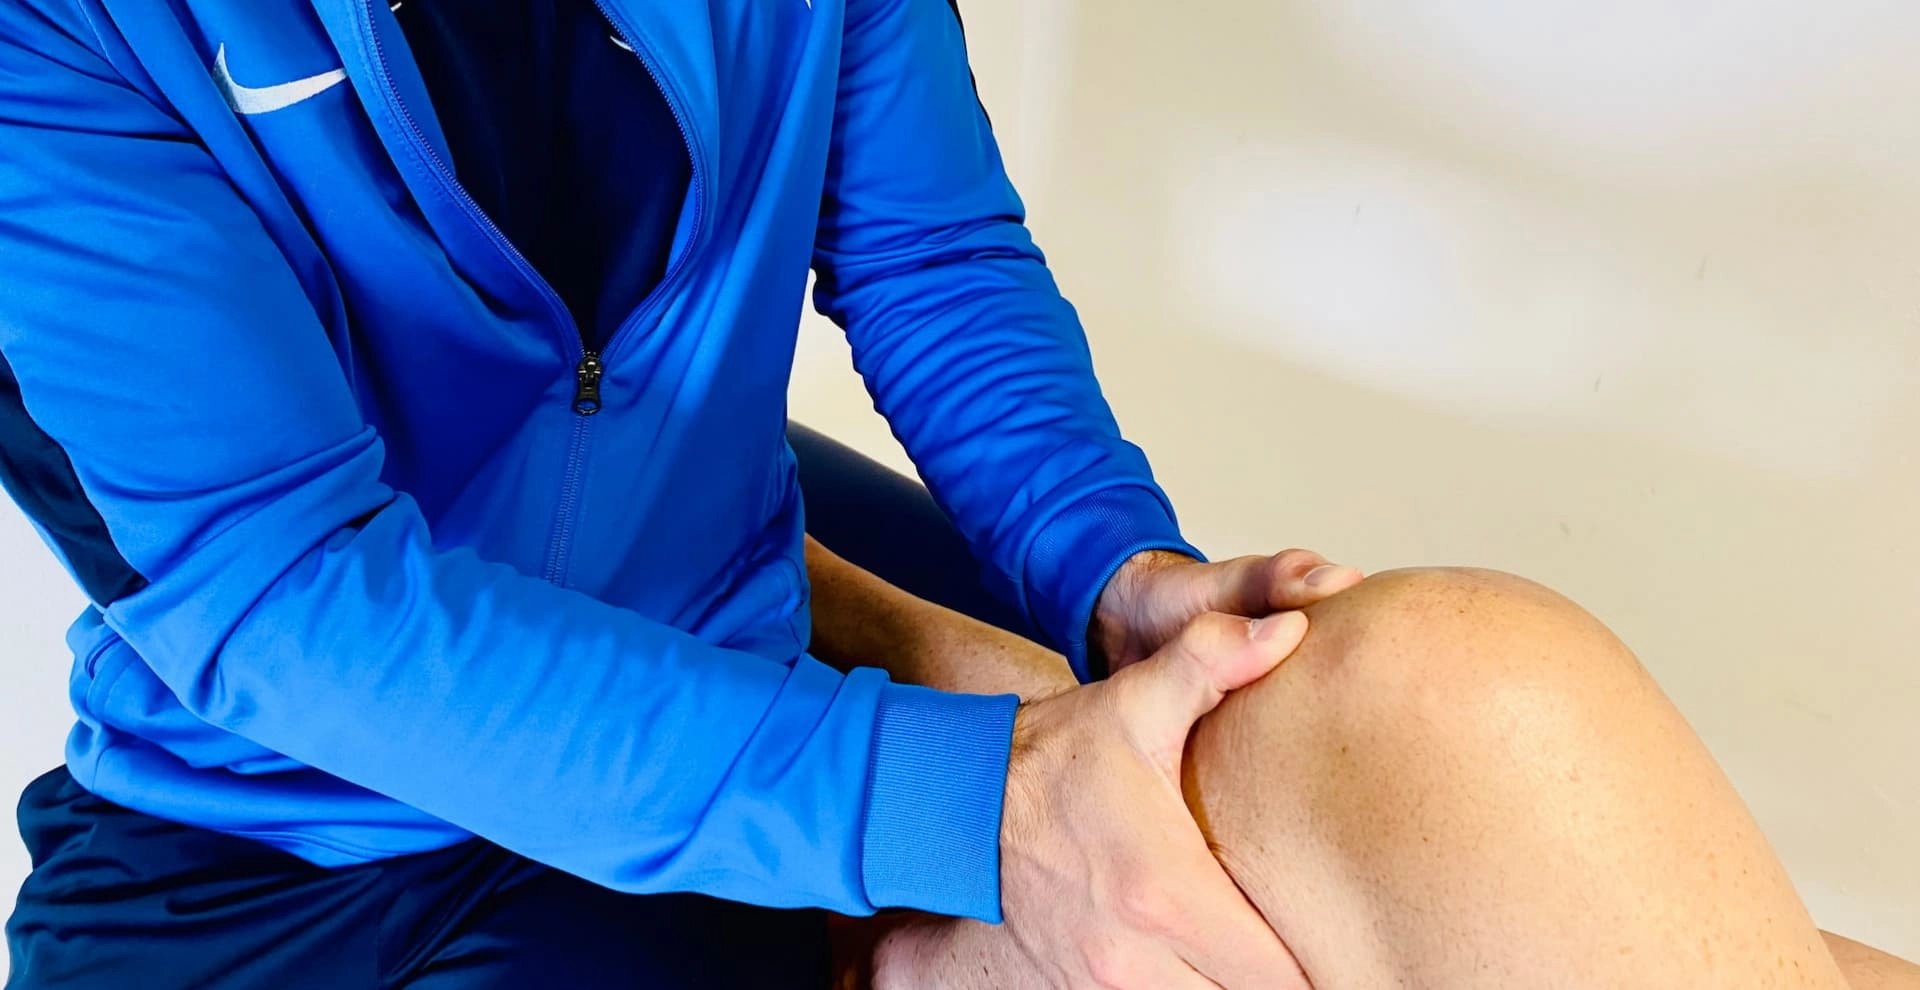 kniepijn behandelen door onze kniespecialist fysiotherapeut | HealthCentre Groningen Zuidhorn